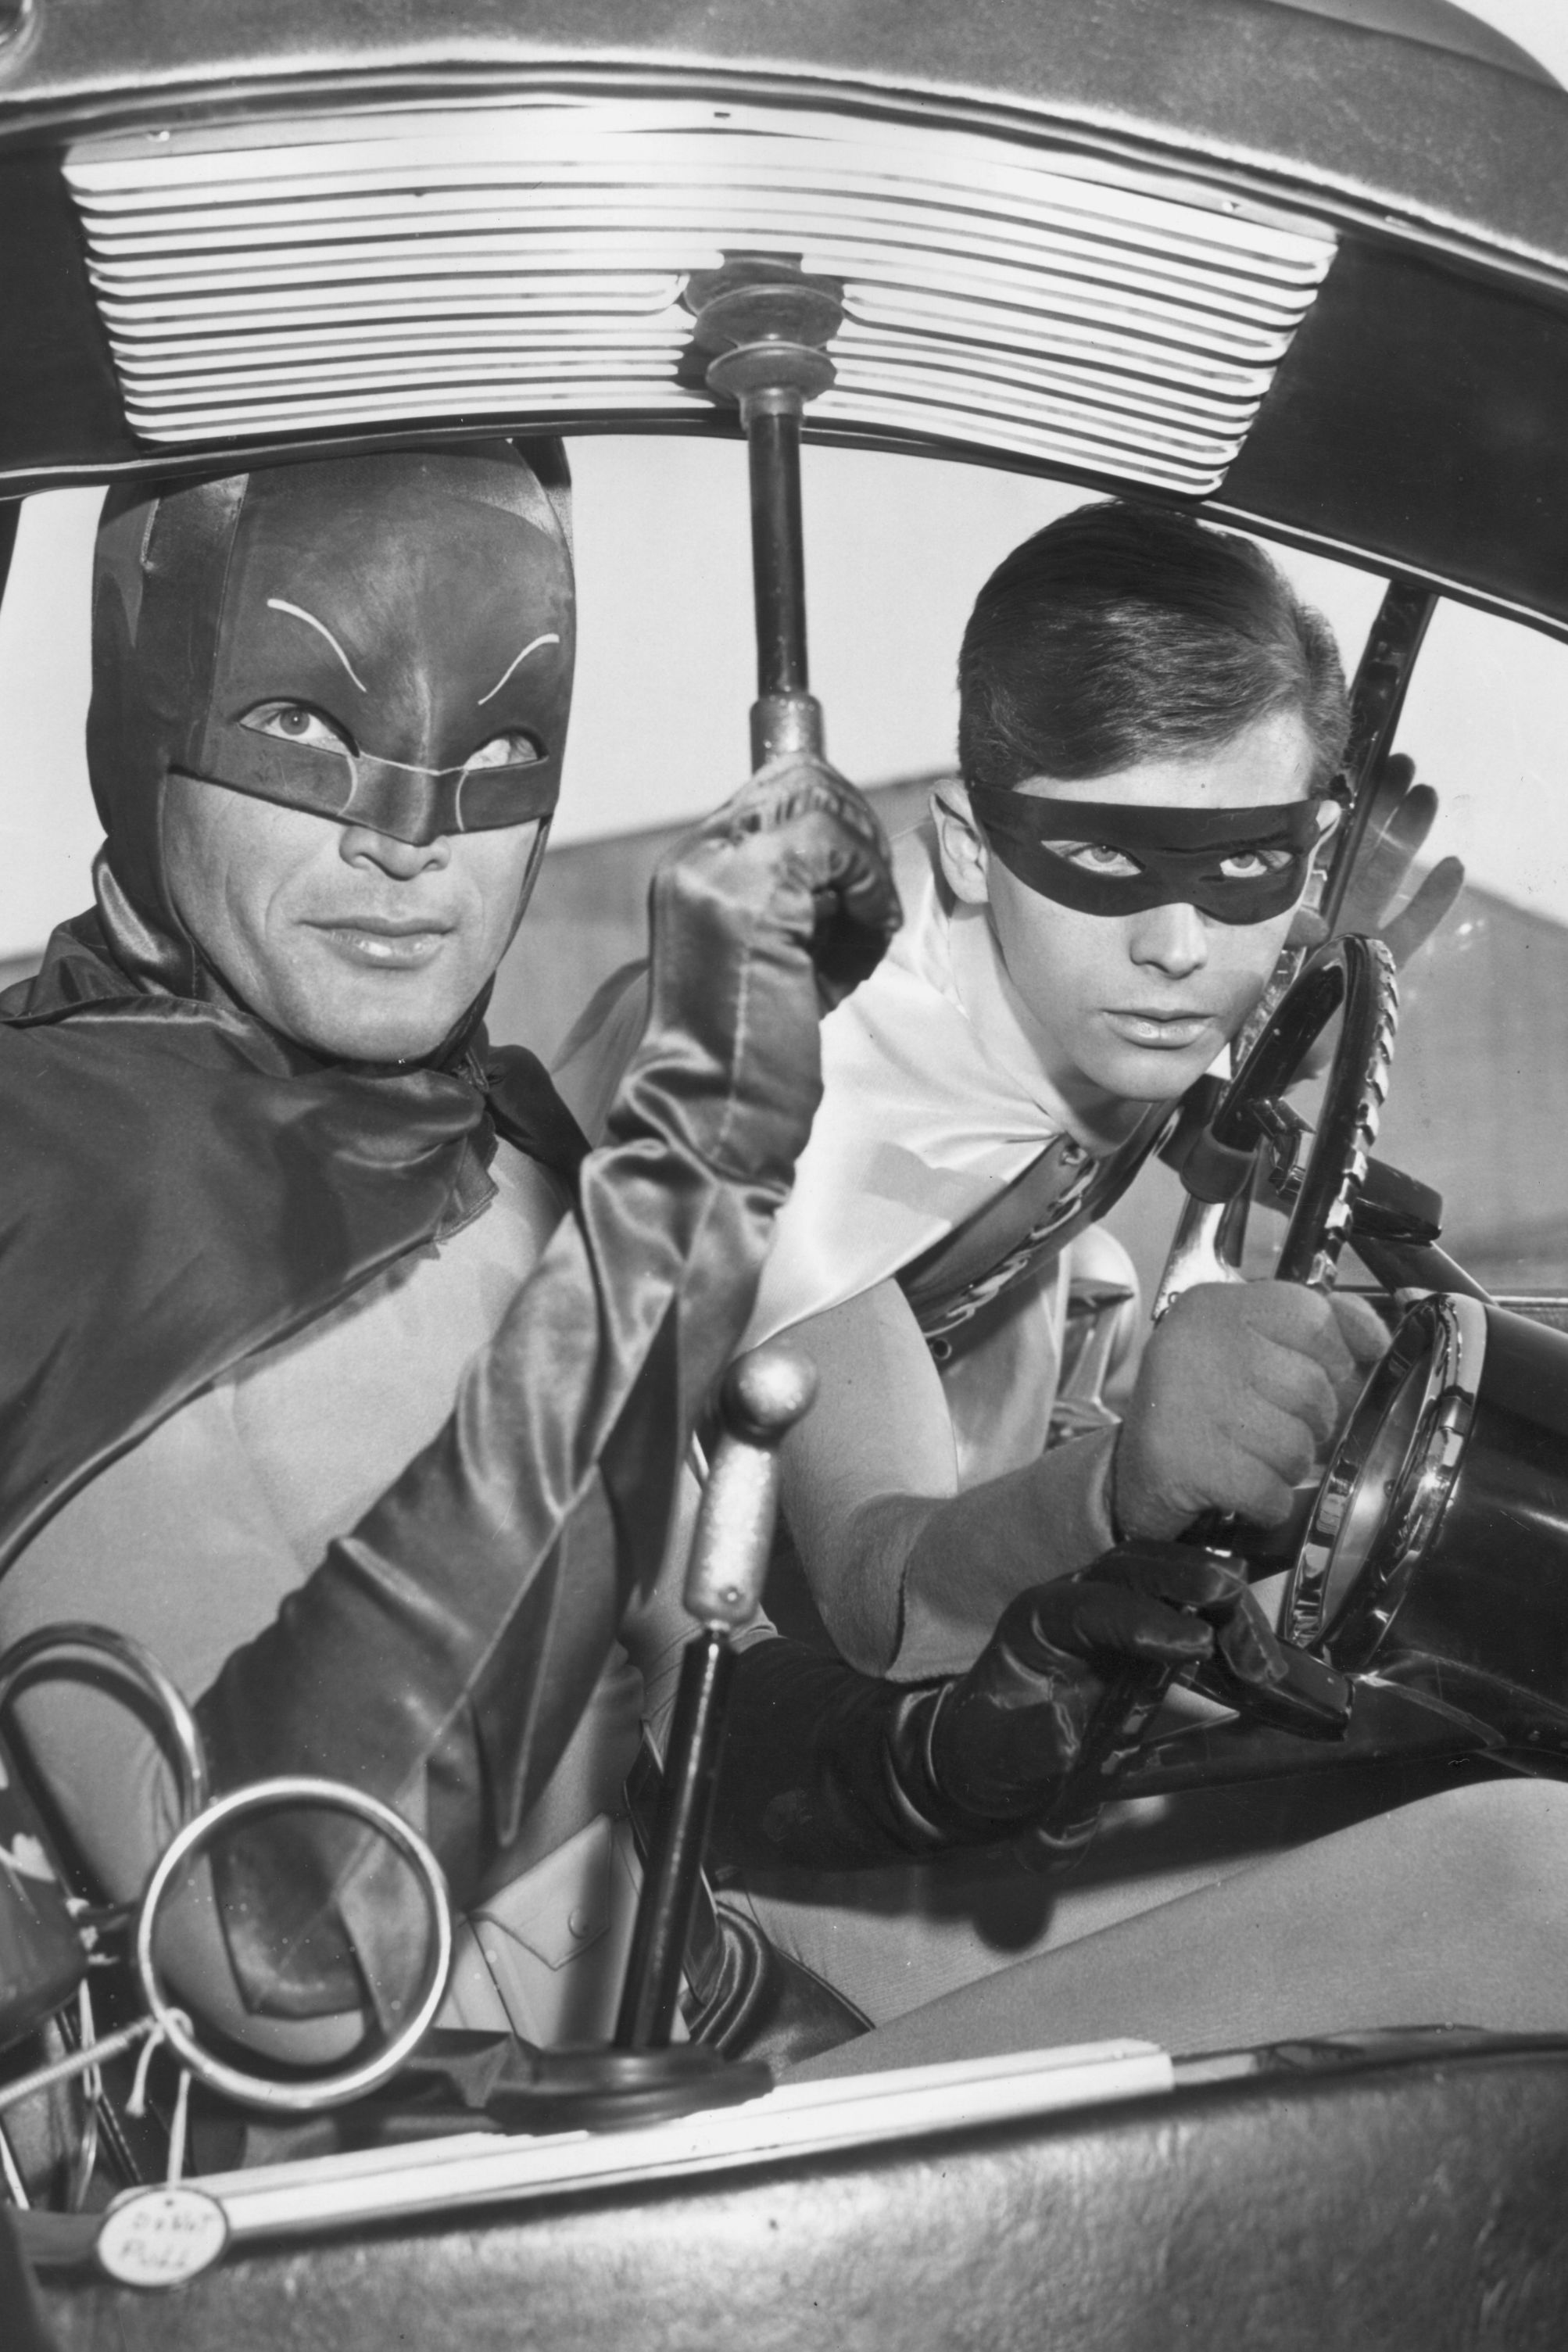 Batman' TV show marks its 50th anniversary | CNN